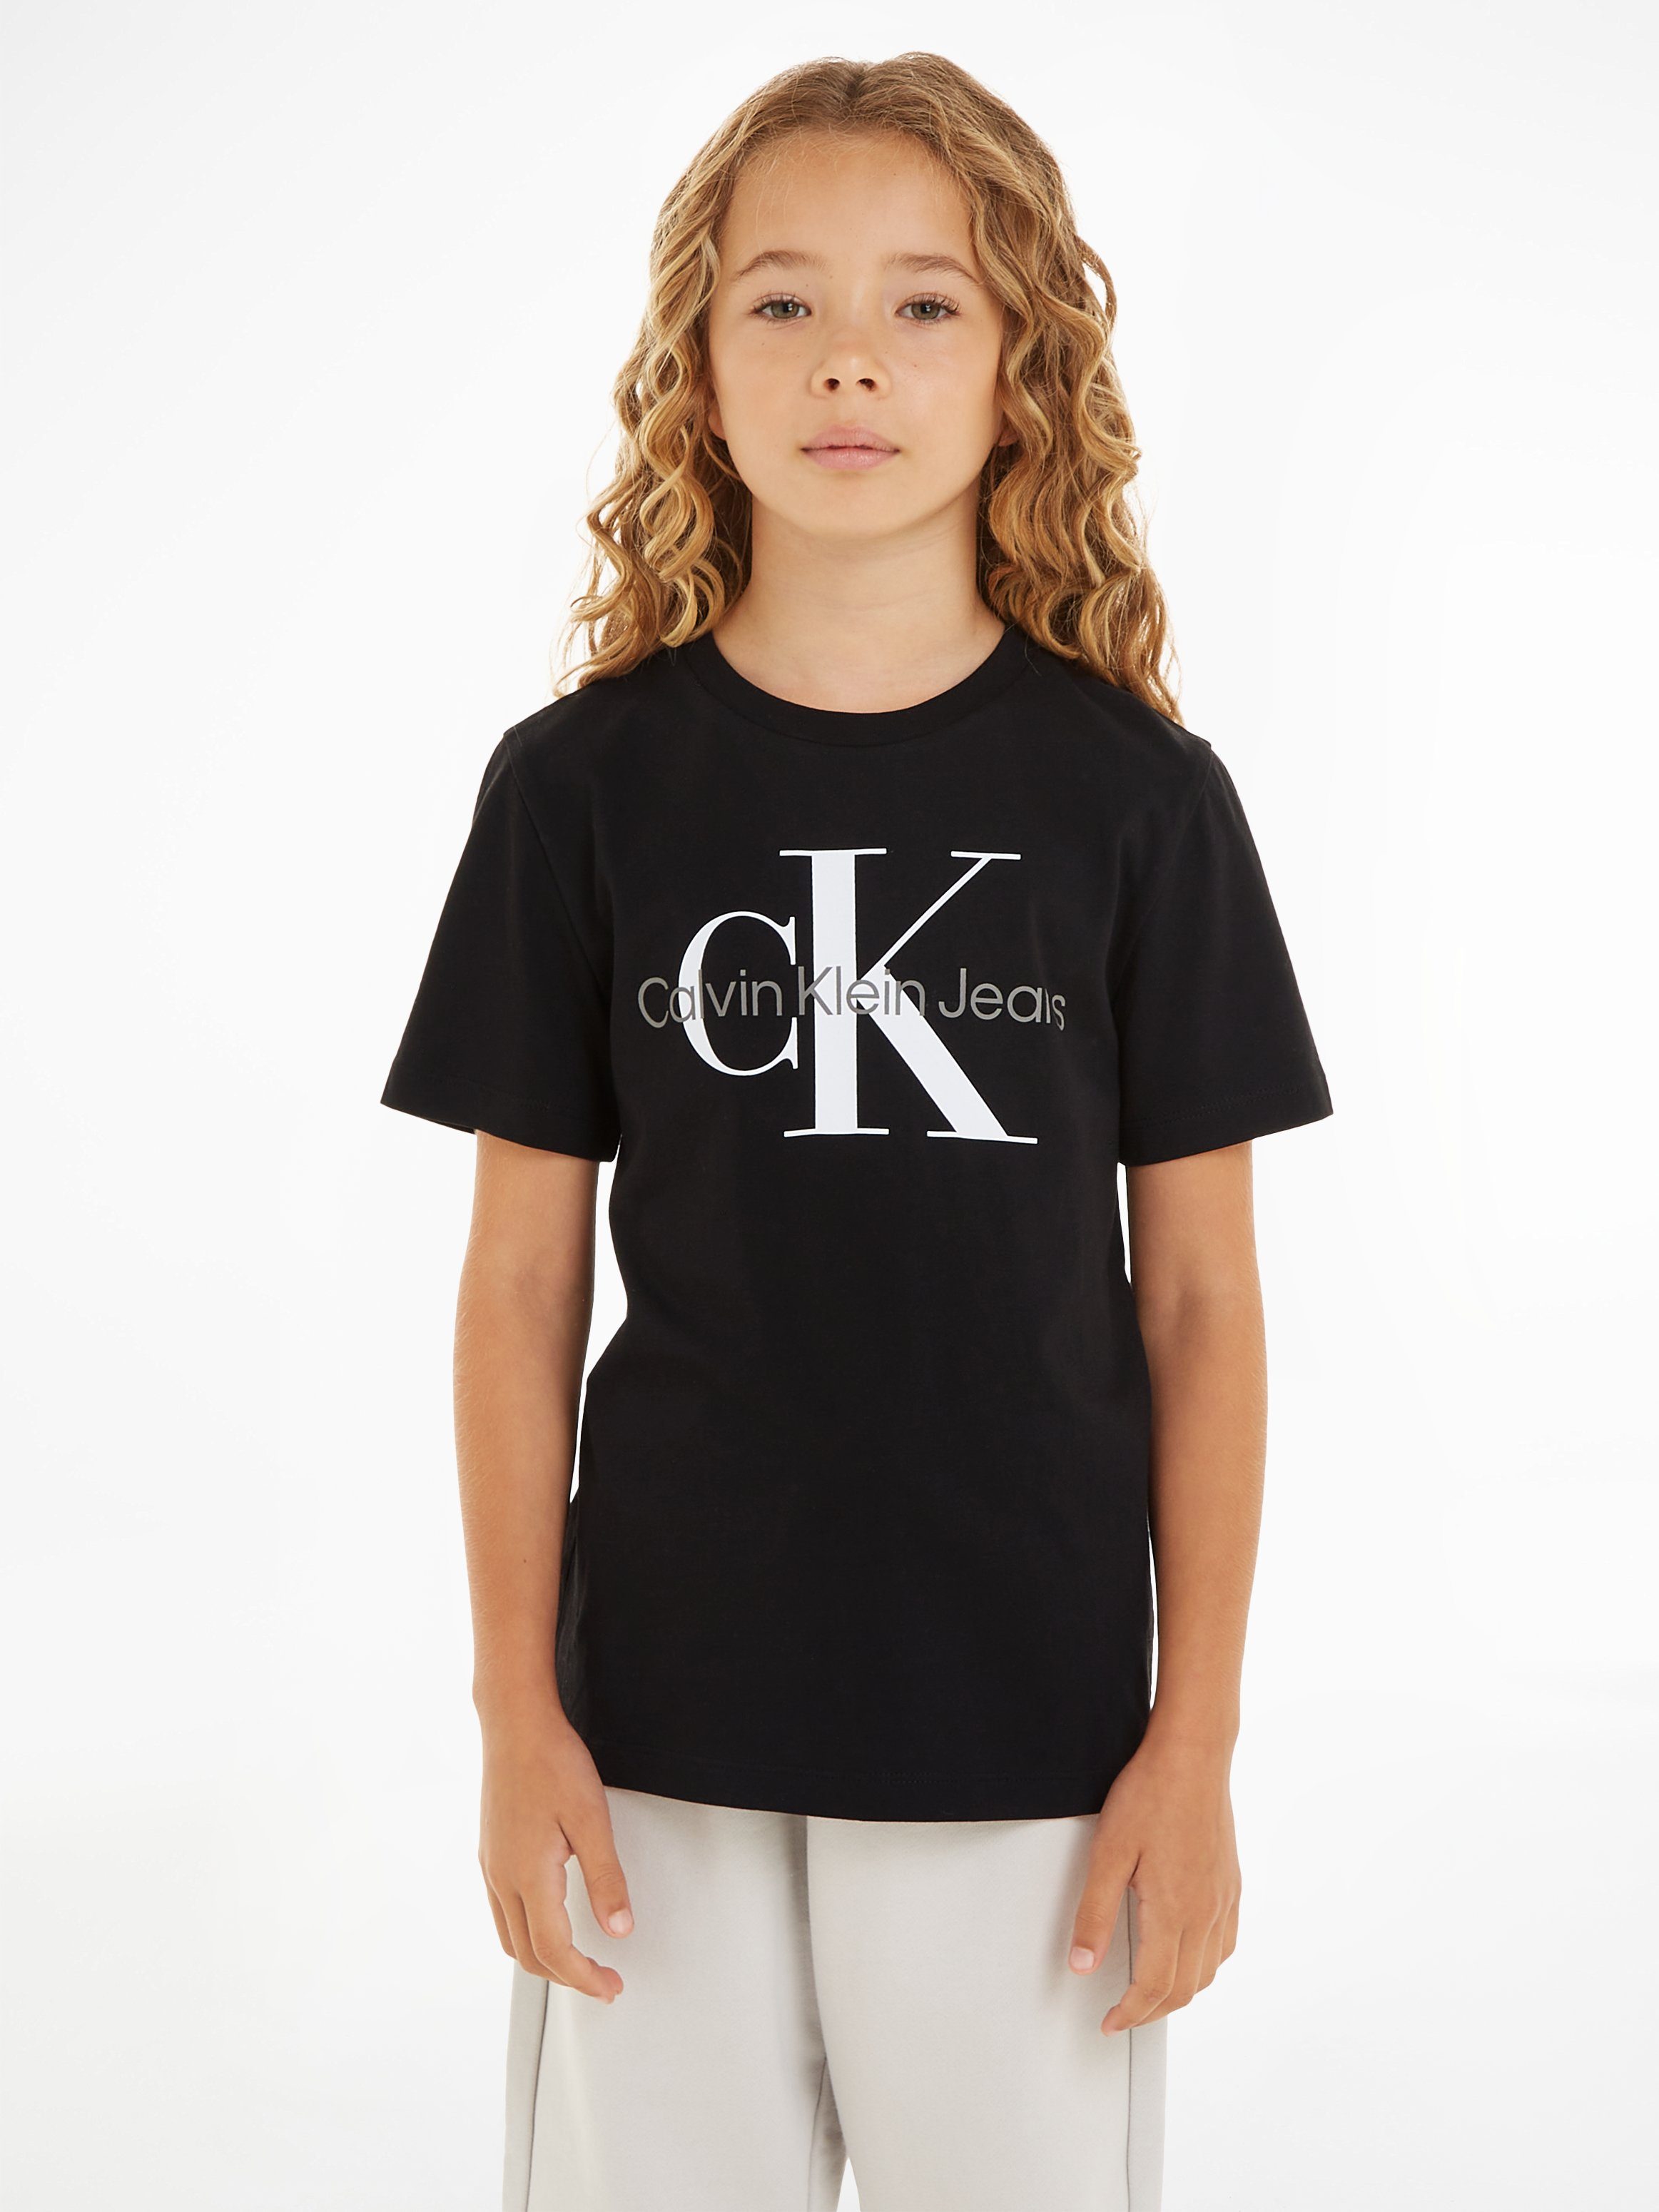 Black SS CK Ck MONOGRAM T-SHIRT Jeans T-Shirt Calvin Klein